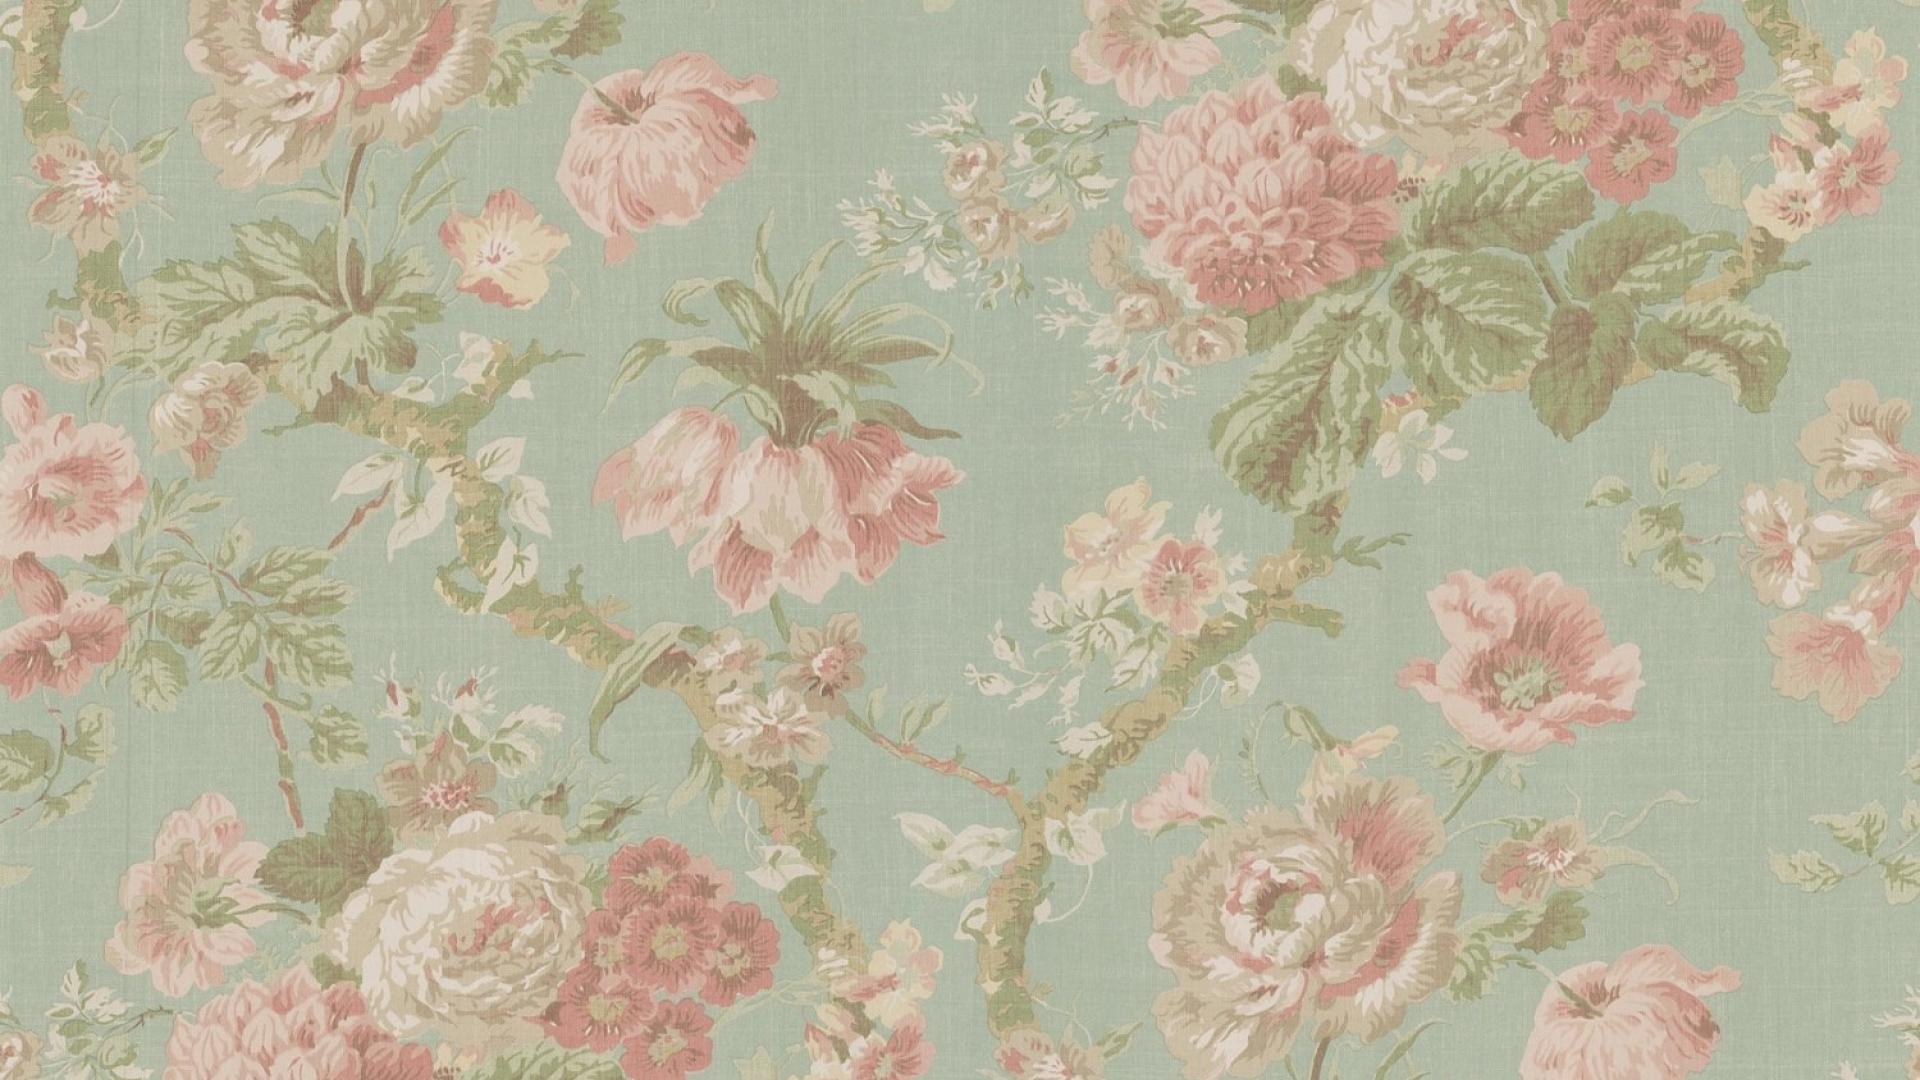 Vintage Floral Background Wallpaper Wp66010264